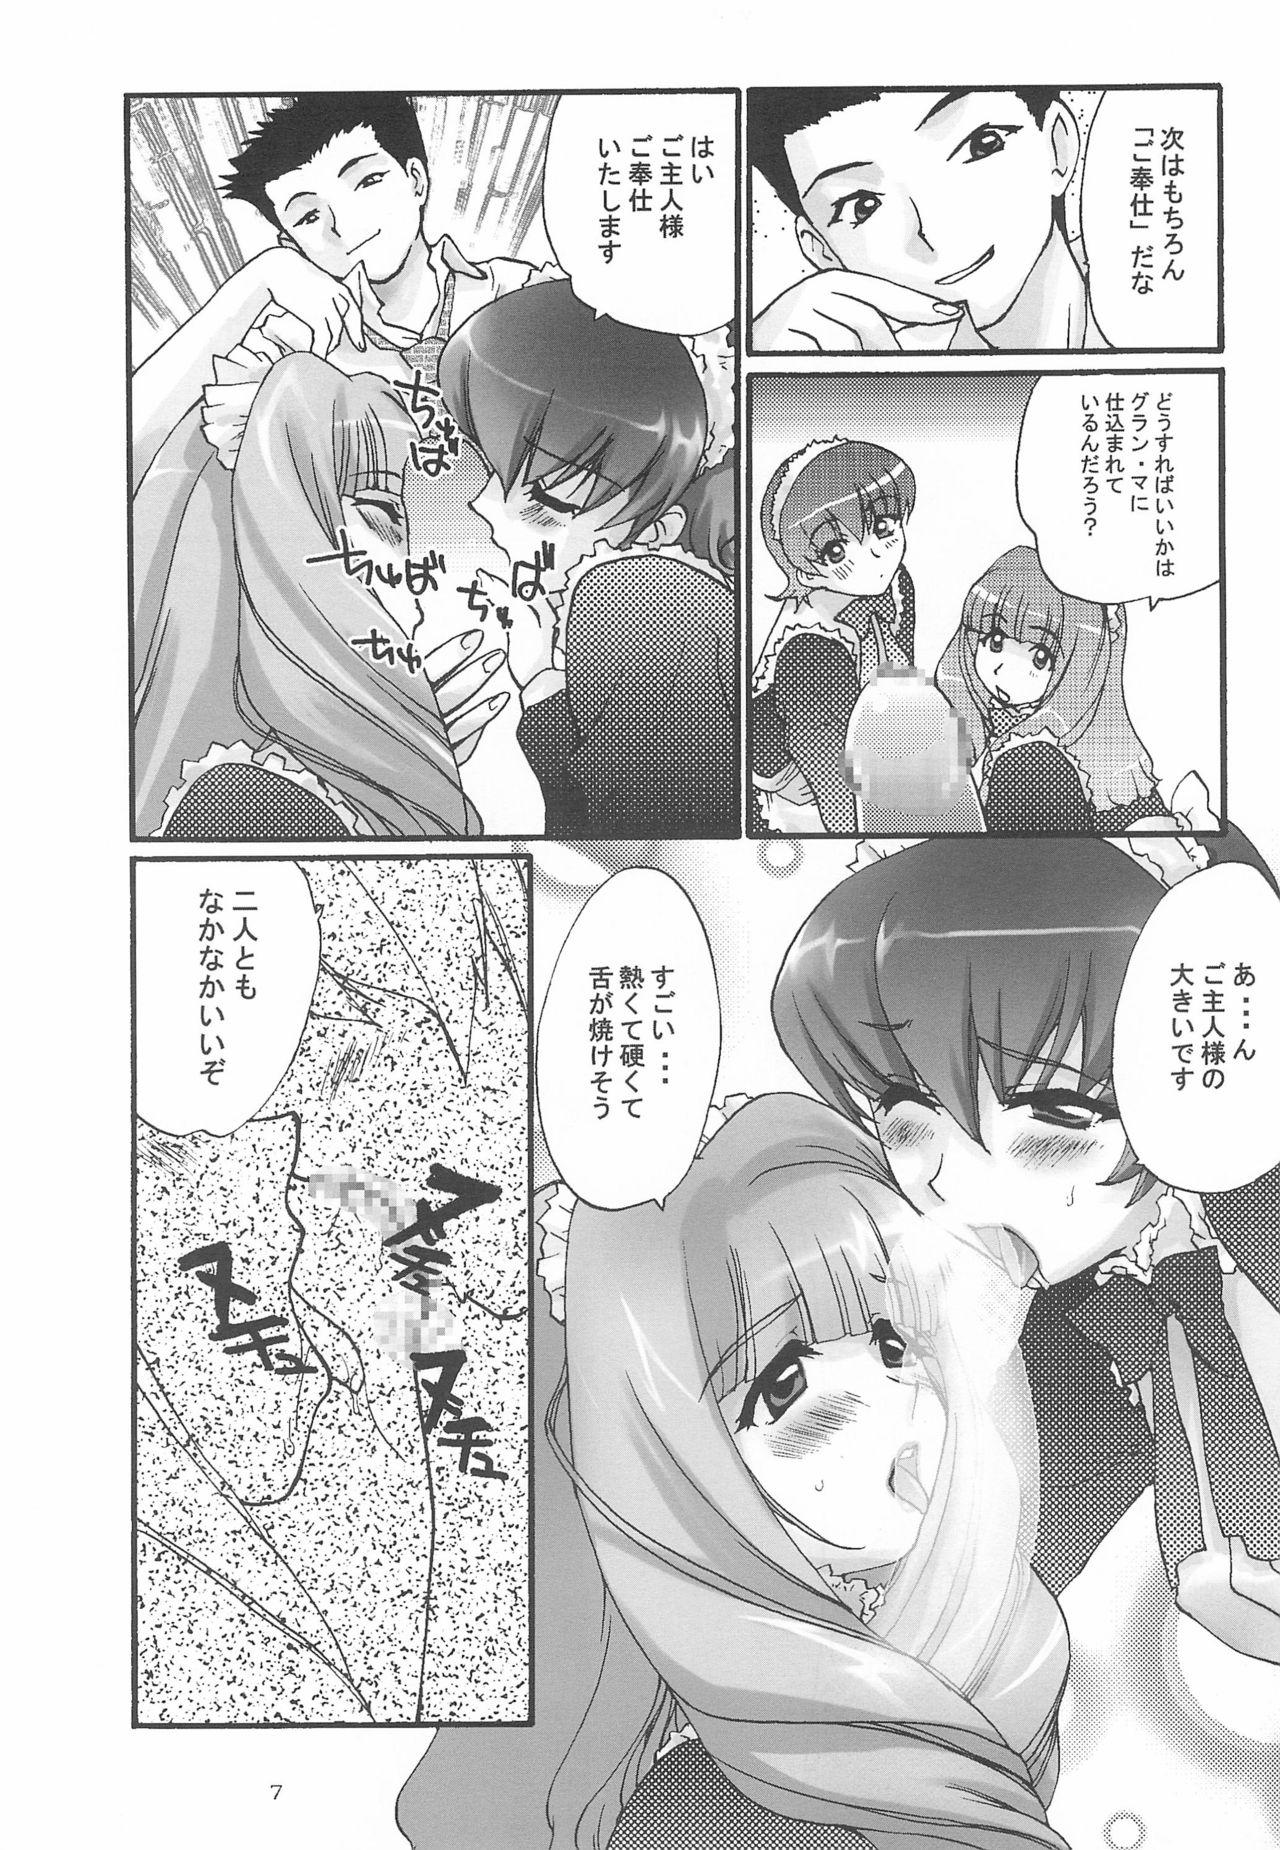 Gaydudes Alleluia - Sakura taisen | sakura wars Mallu - Page 9